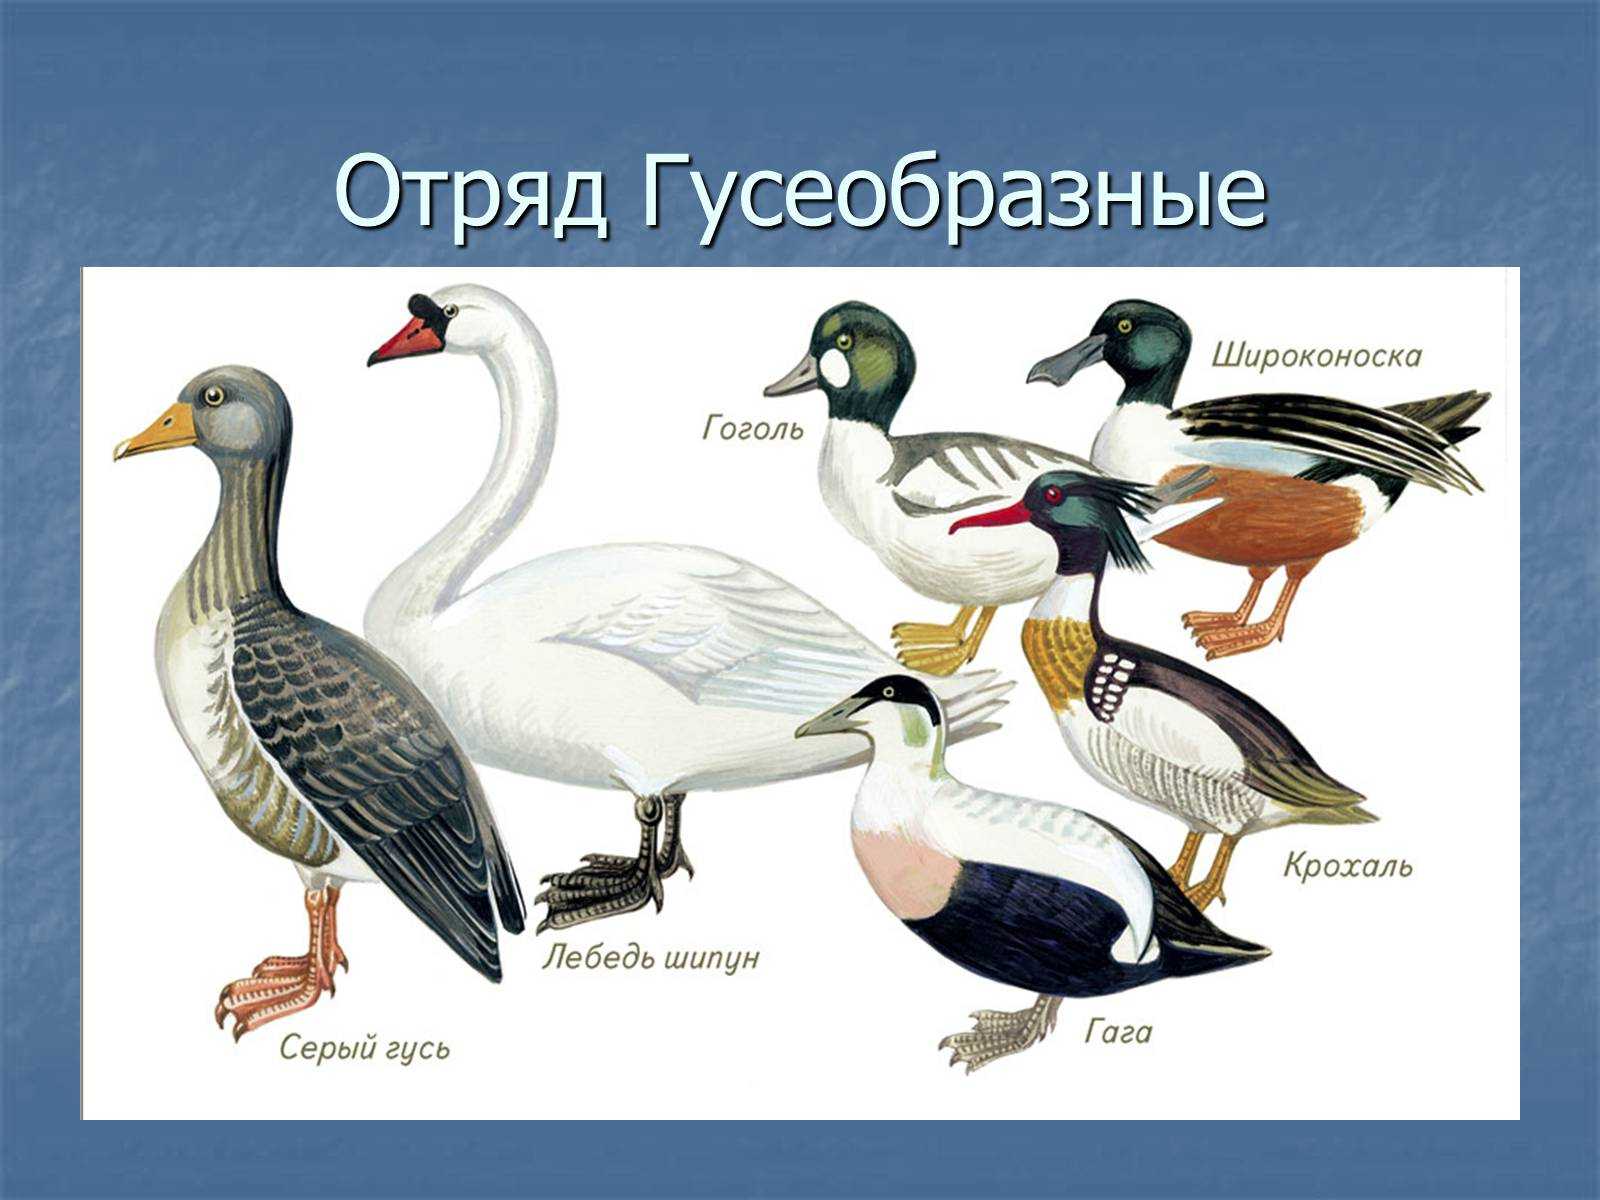 § 44. птицы леса. болотные, водоплавающие и околоводные птицы. птицы открытых местообитаний